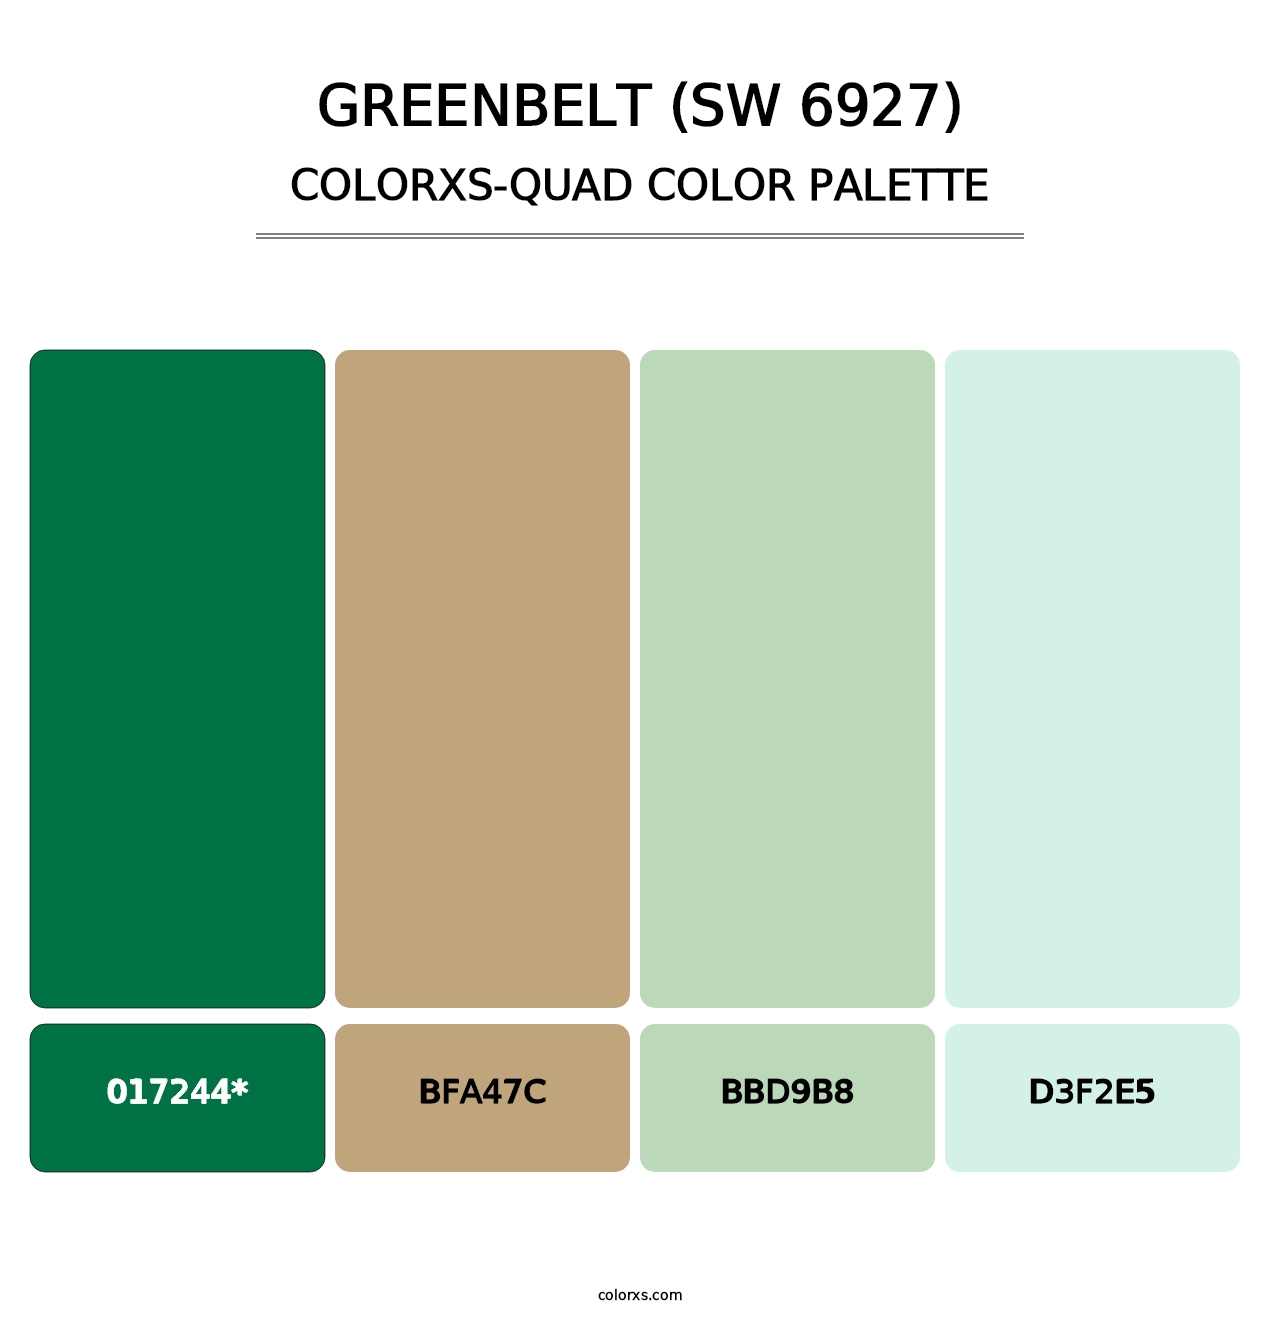 Greenbelt (SW 6927) - Colorxs Quad Palette